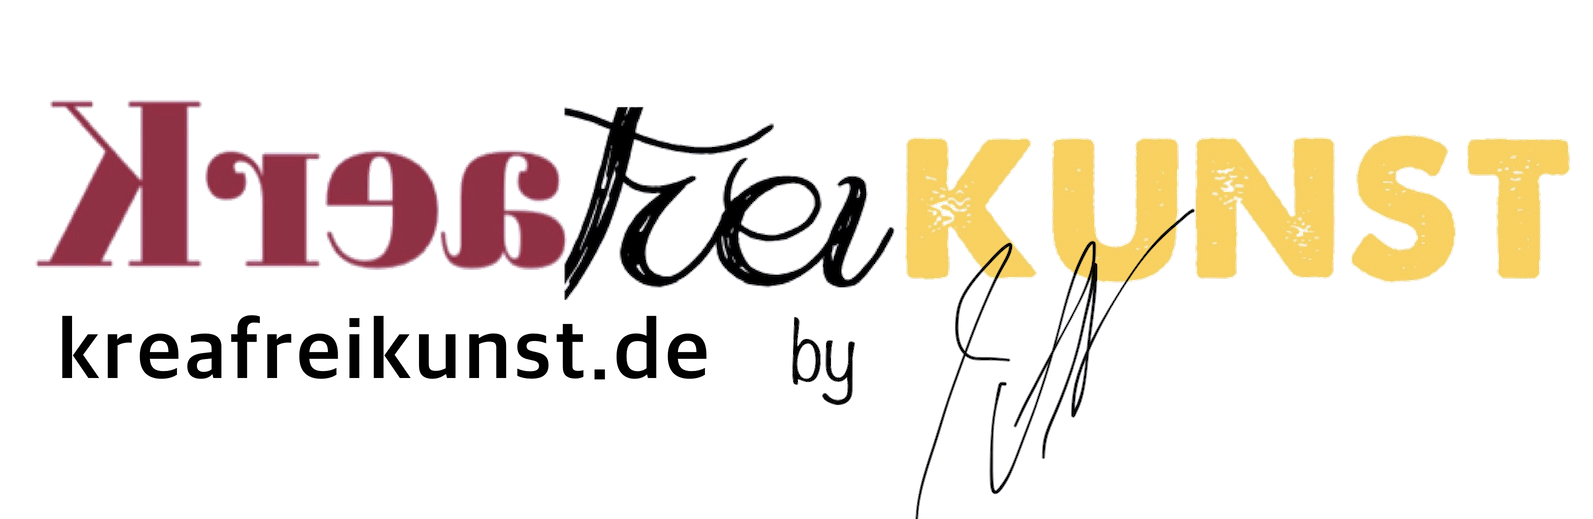 KreaFreiKunst by TLN Logo